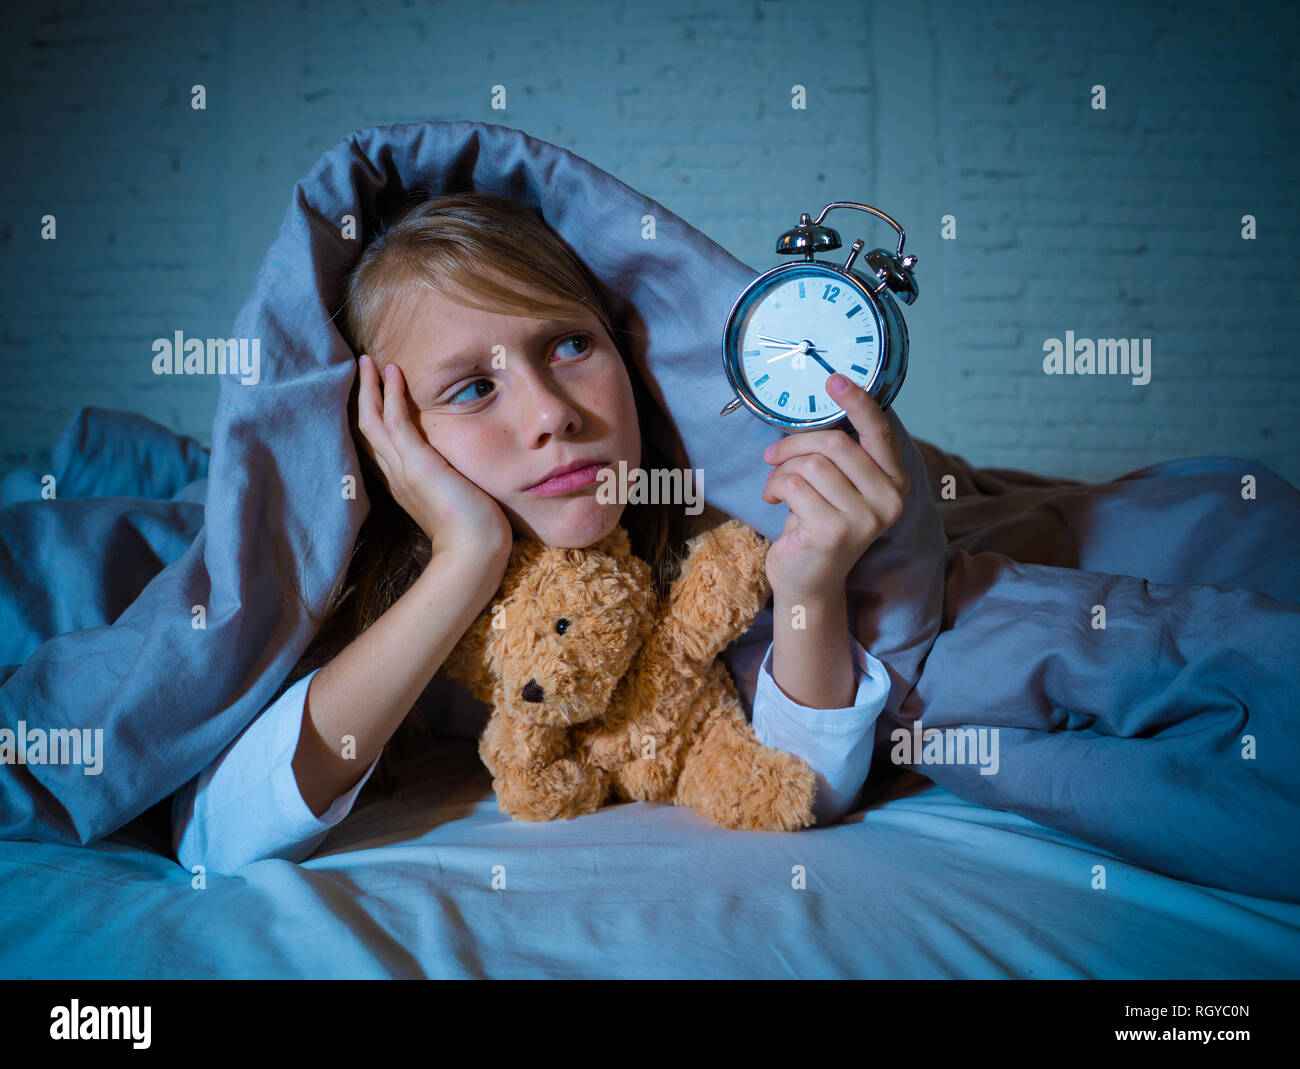 Cute schlaflose kleines Mädchen im Bett liegend zeigt Wecker müde in das Schlafen Probleme schlafend nachts aufhalten oder wachen zu früh in Chil Stockfoto